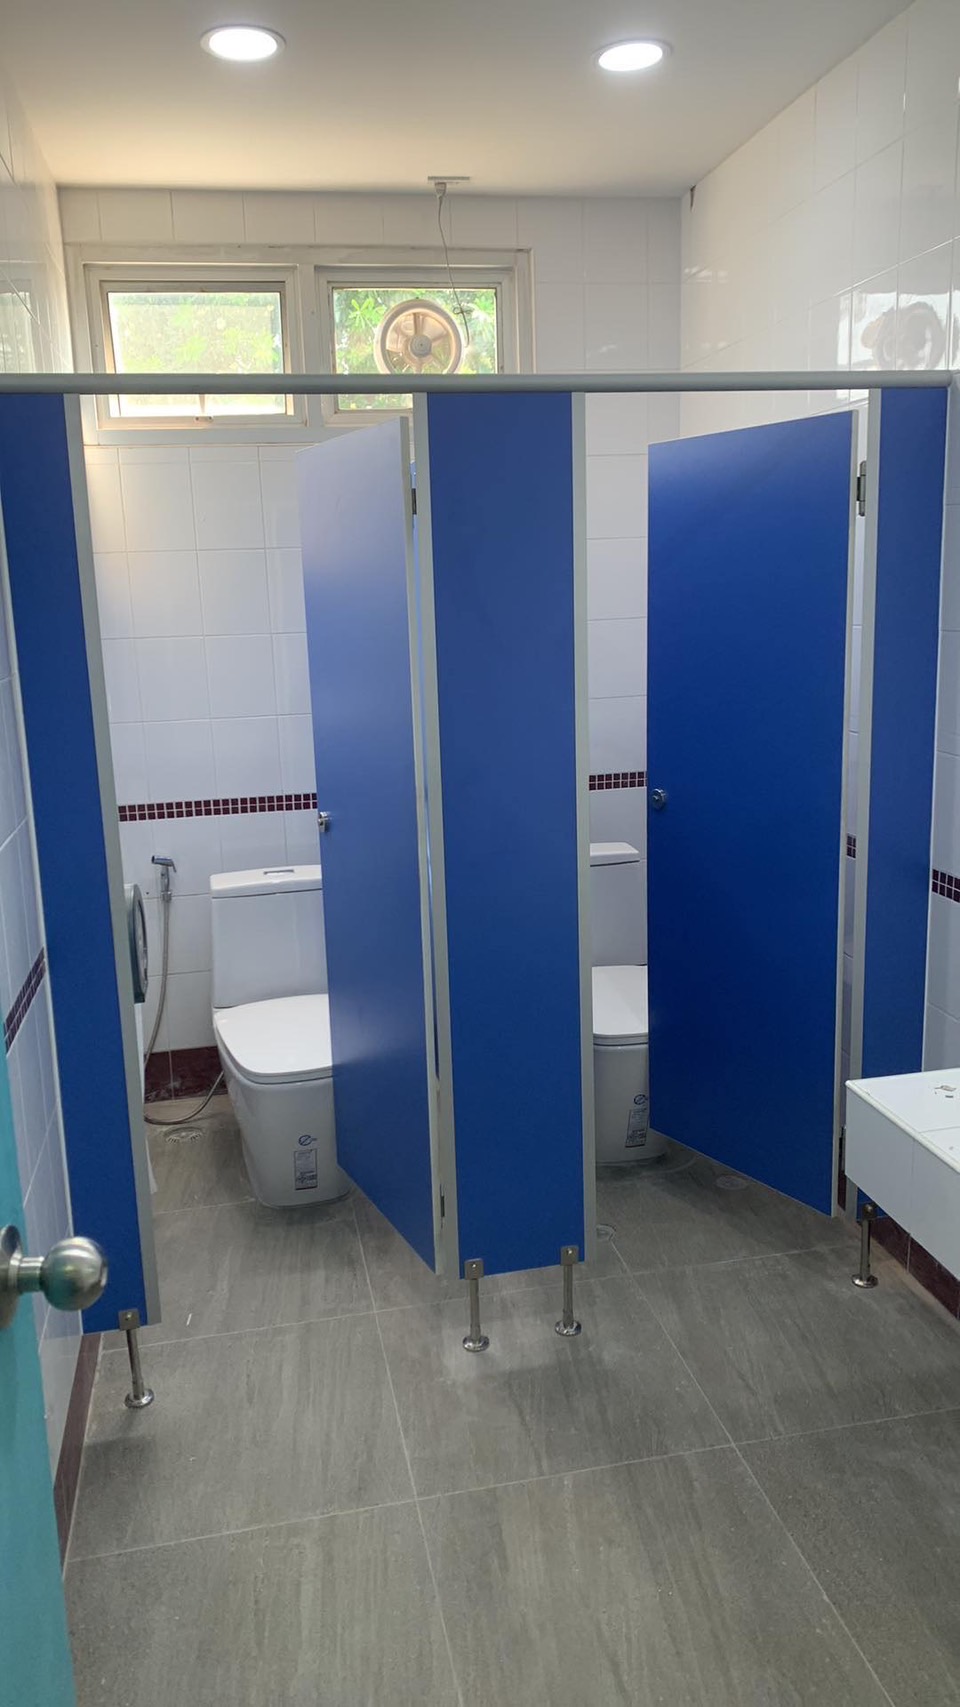 ติดตั้งผนังกั้นห้องน้ำ BGC สีฟ้า จังหวัดปราจีนบุรี